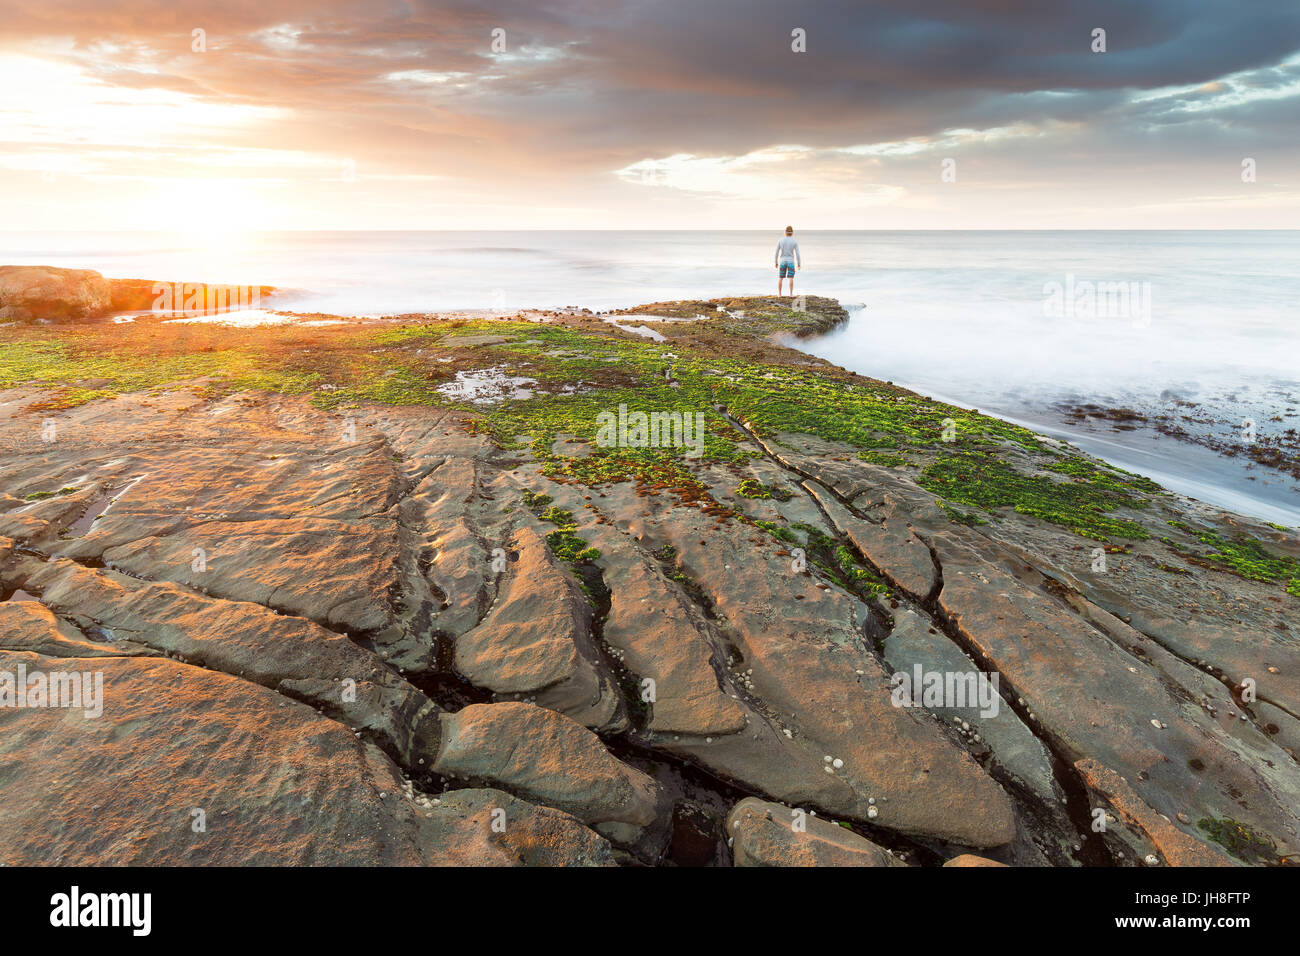 Una persona está al borde del agua y relojes un hermoso amanecer ilumina el océano y a la costa que rodea. Foto de stock